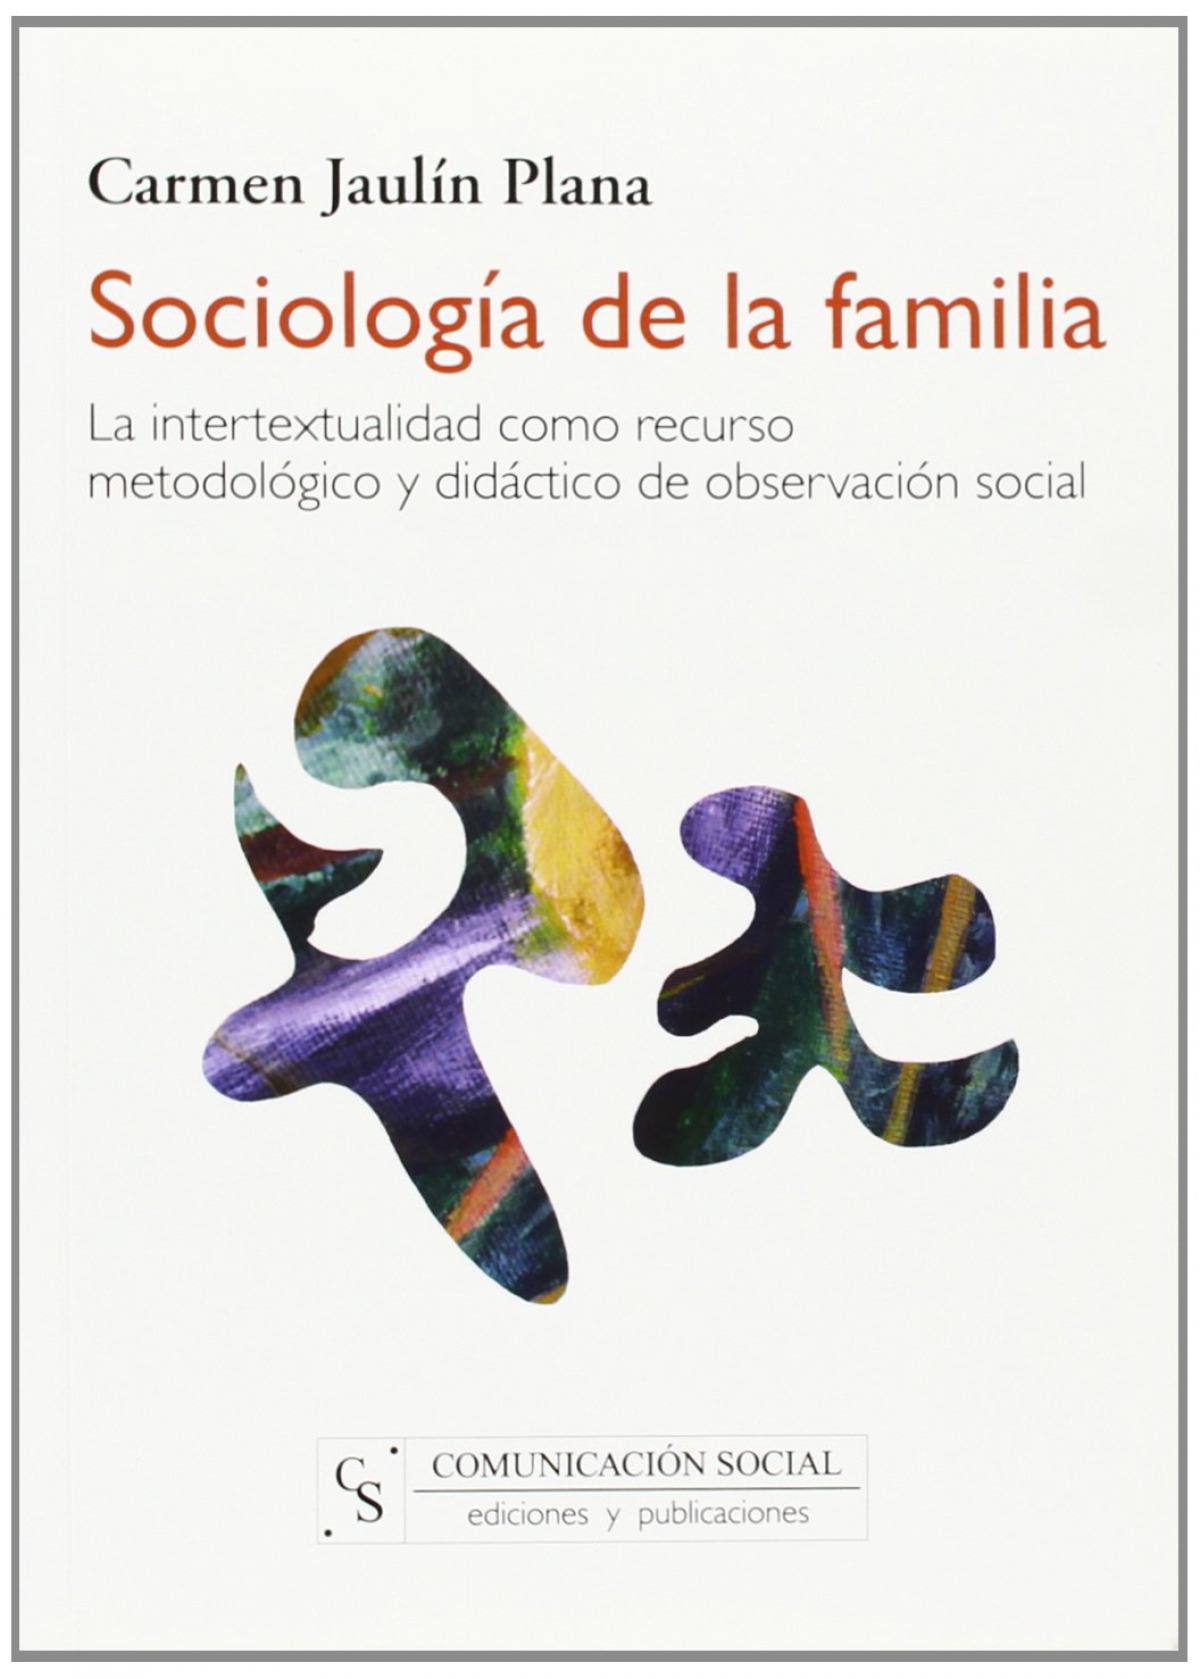 Sociología de la familia La intertextualidad como recurso metodológico - Jaulín Plana, Carmen